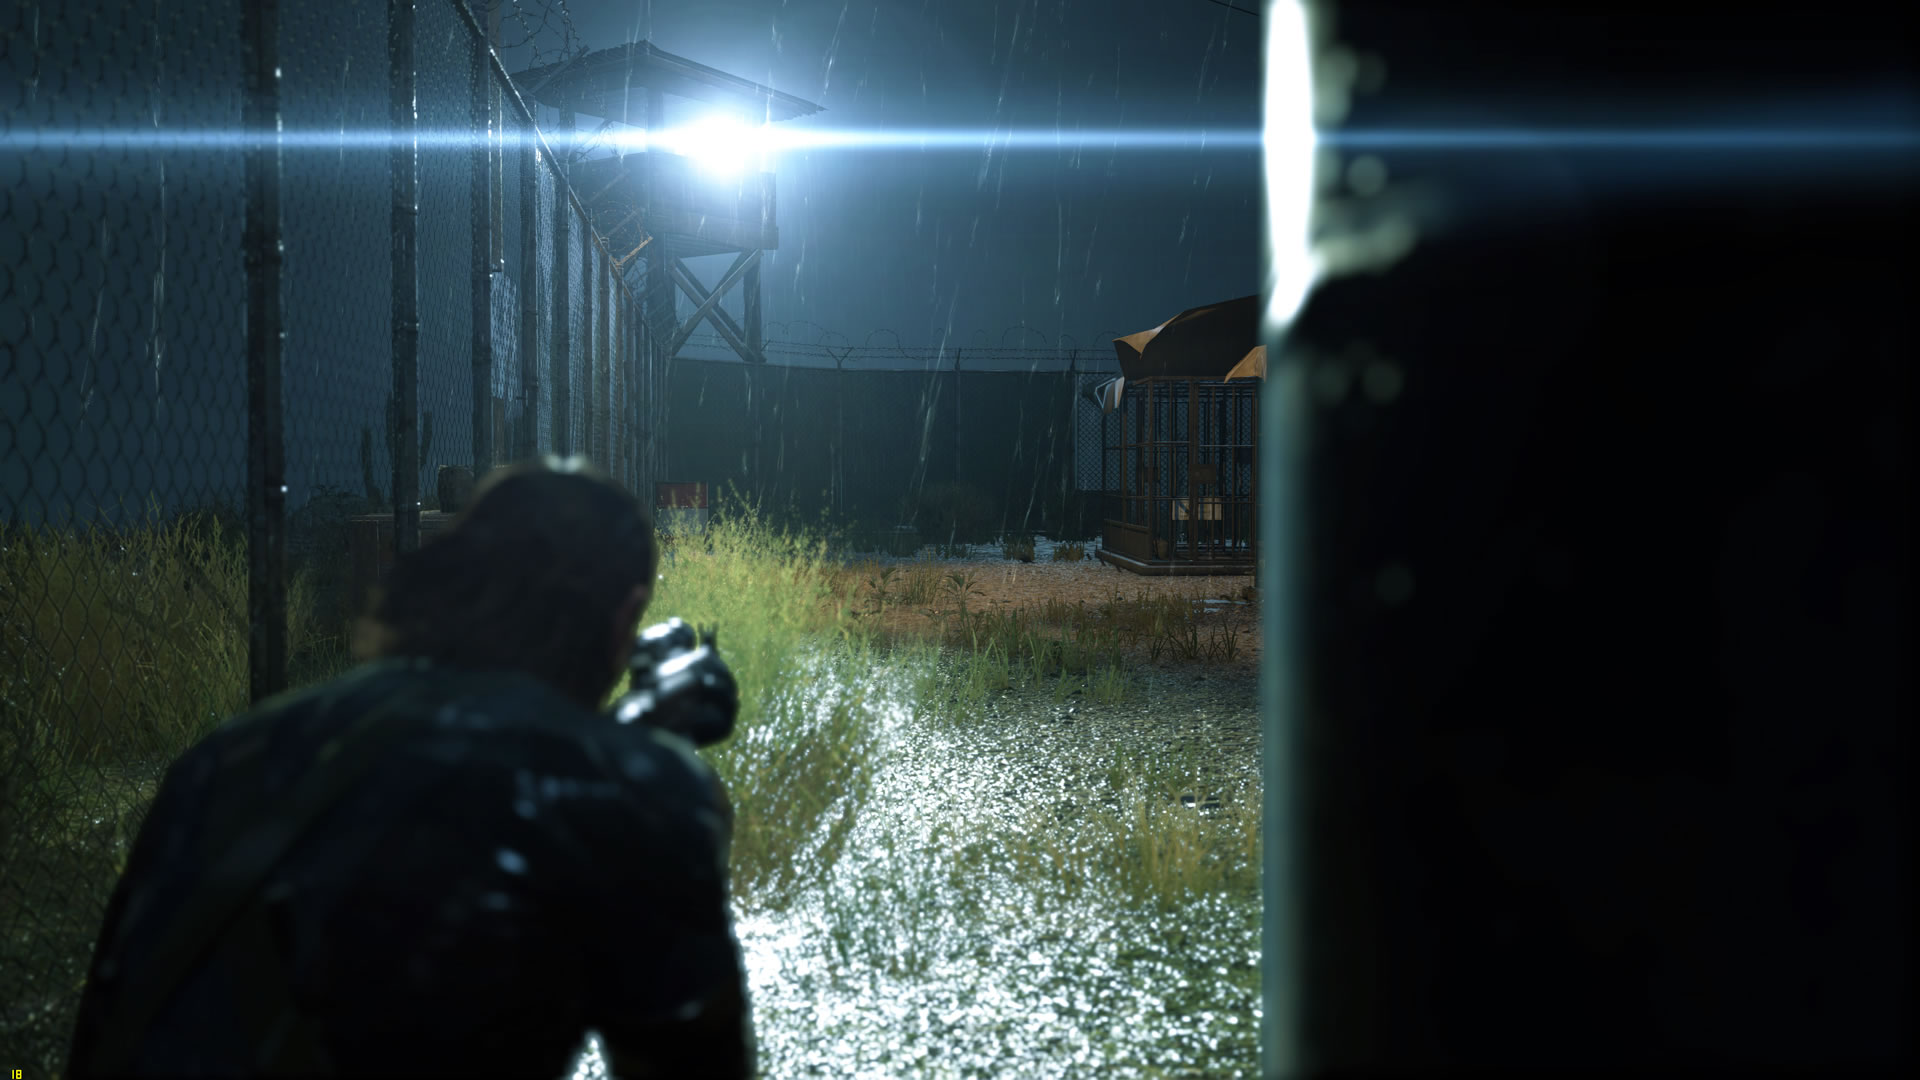 Une avalanche d'images de Metal Gear Solid V : Ground Zeroes sur PC